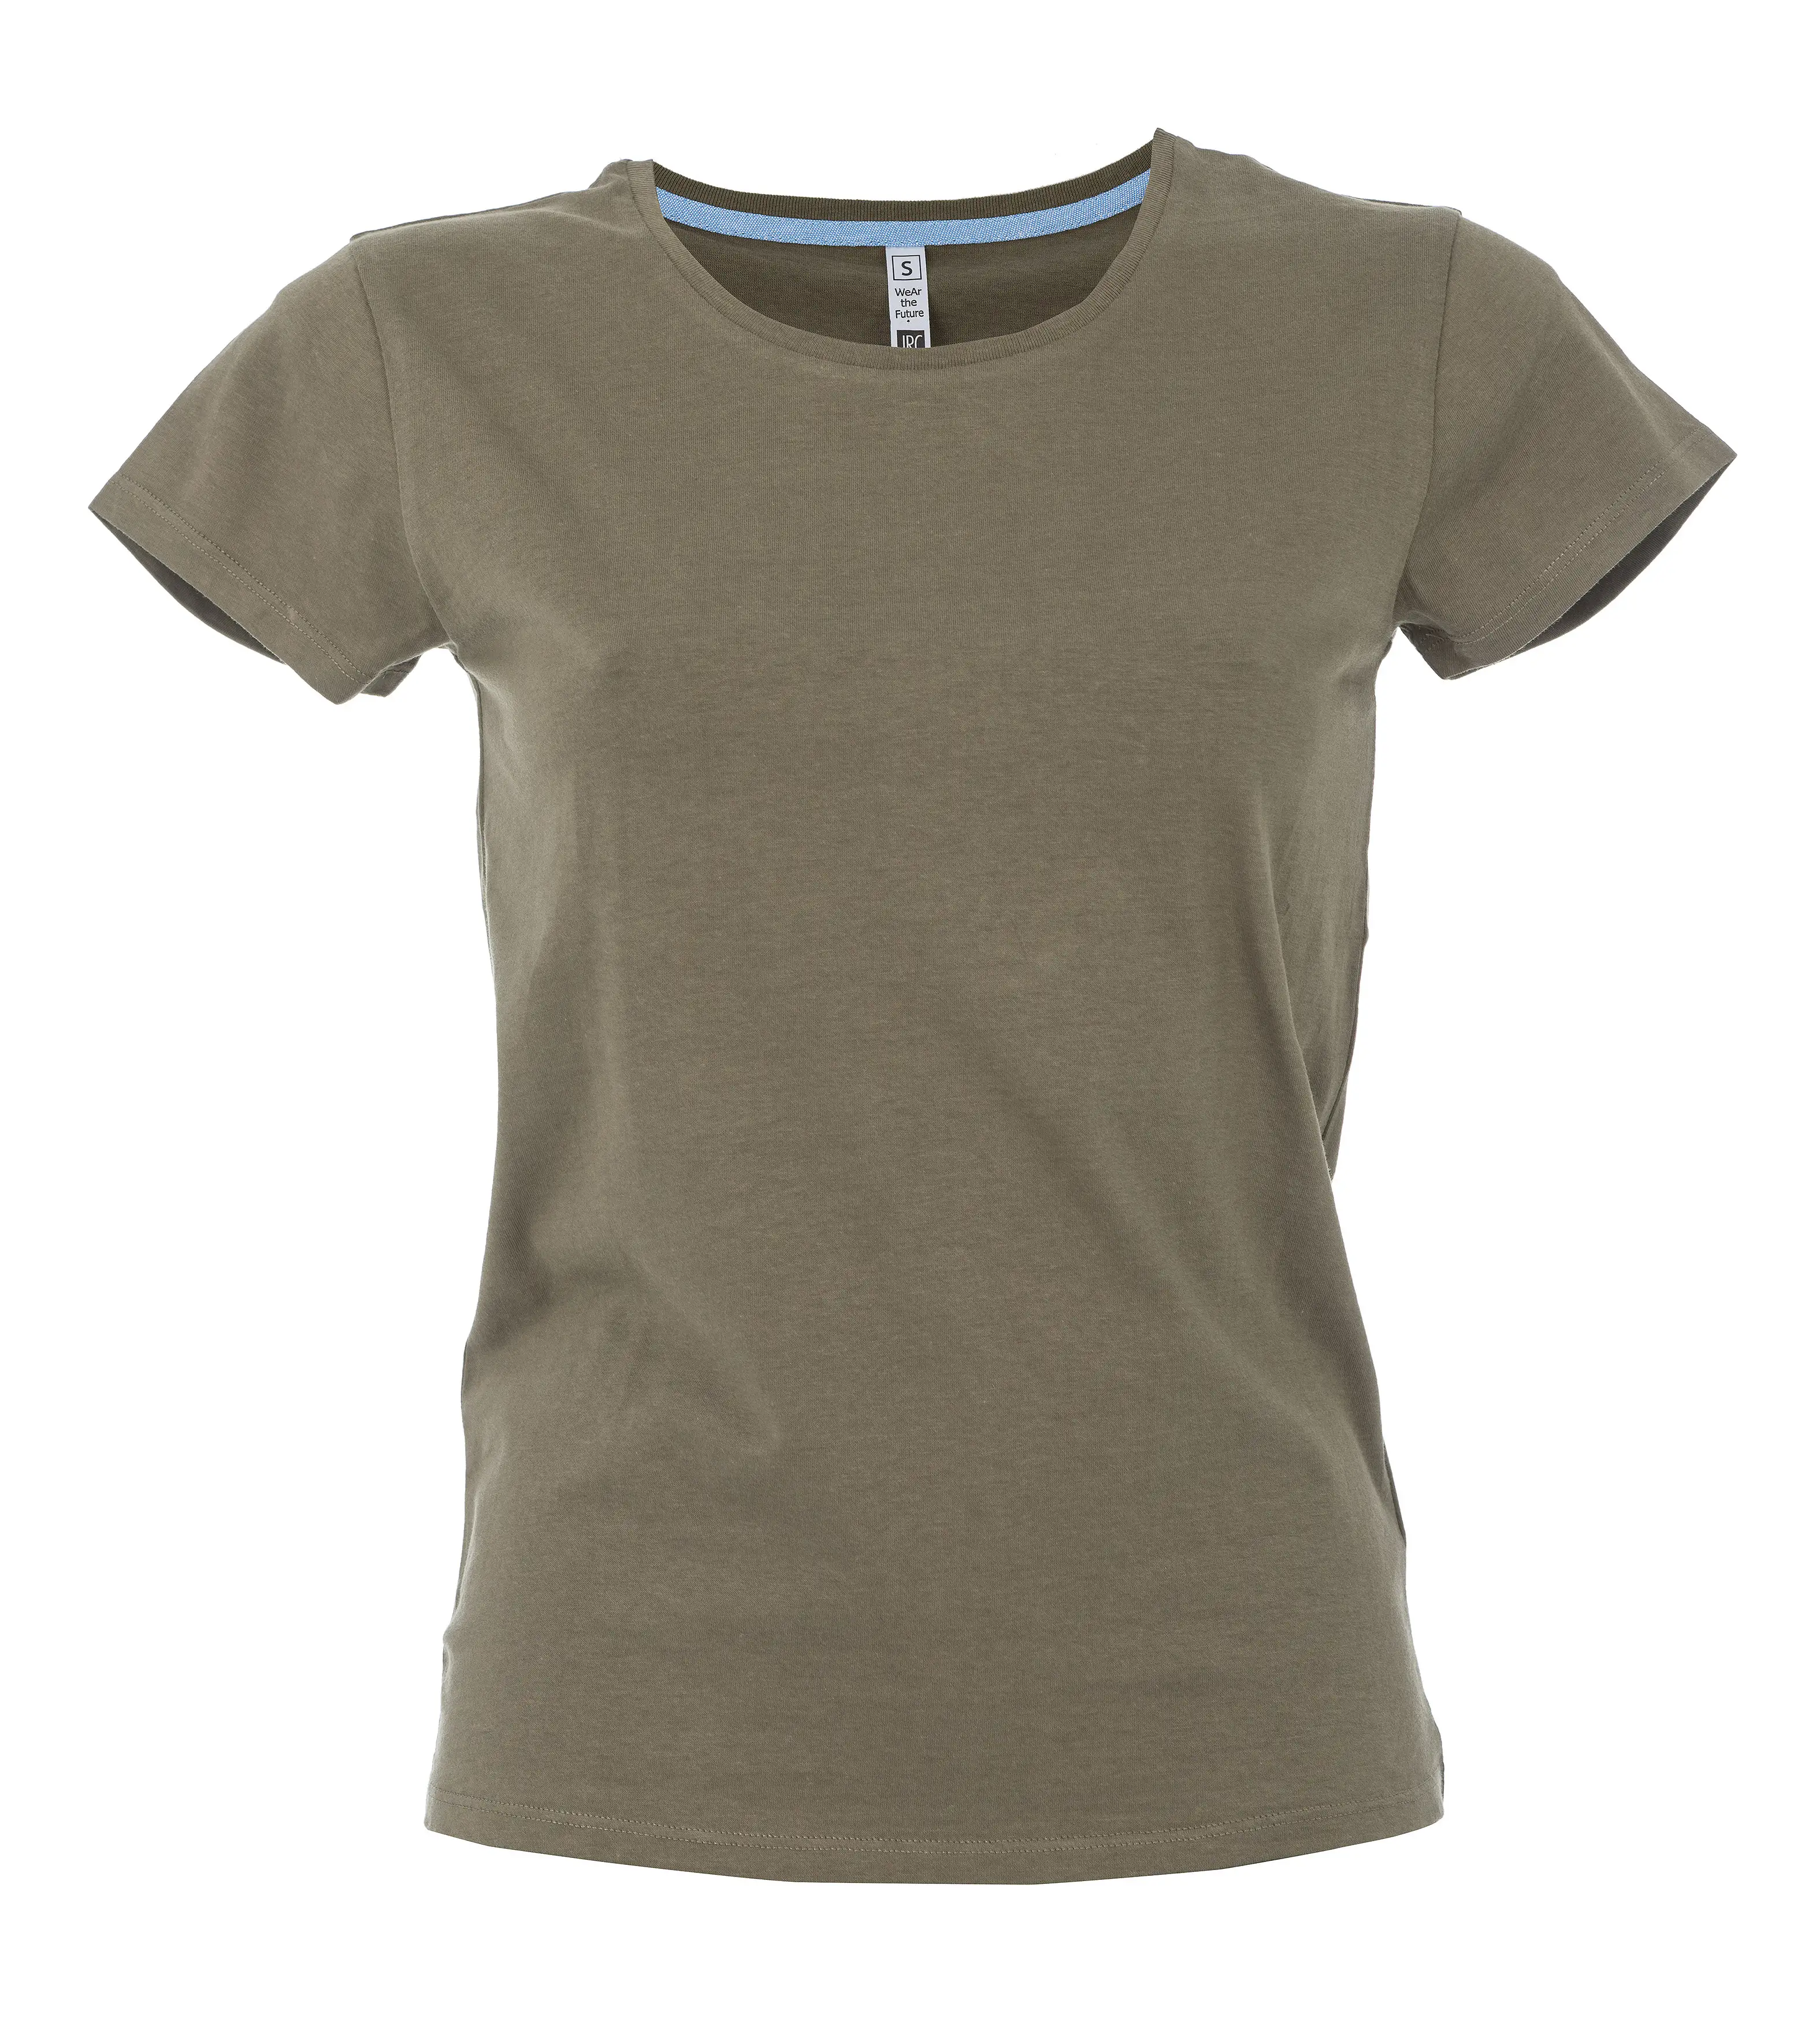 T-Shirt Manica Corta Donna Cotone Personalizzata - James Ross Collection